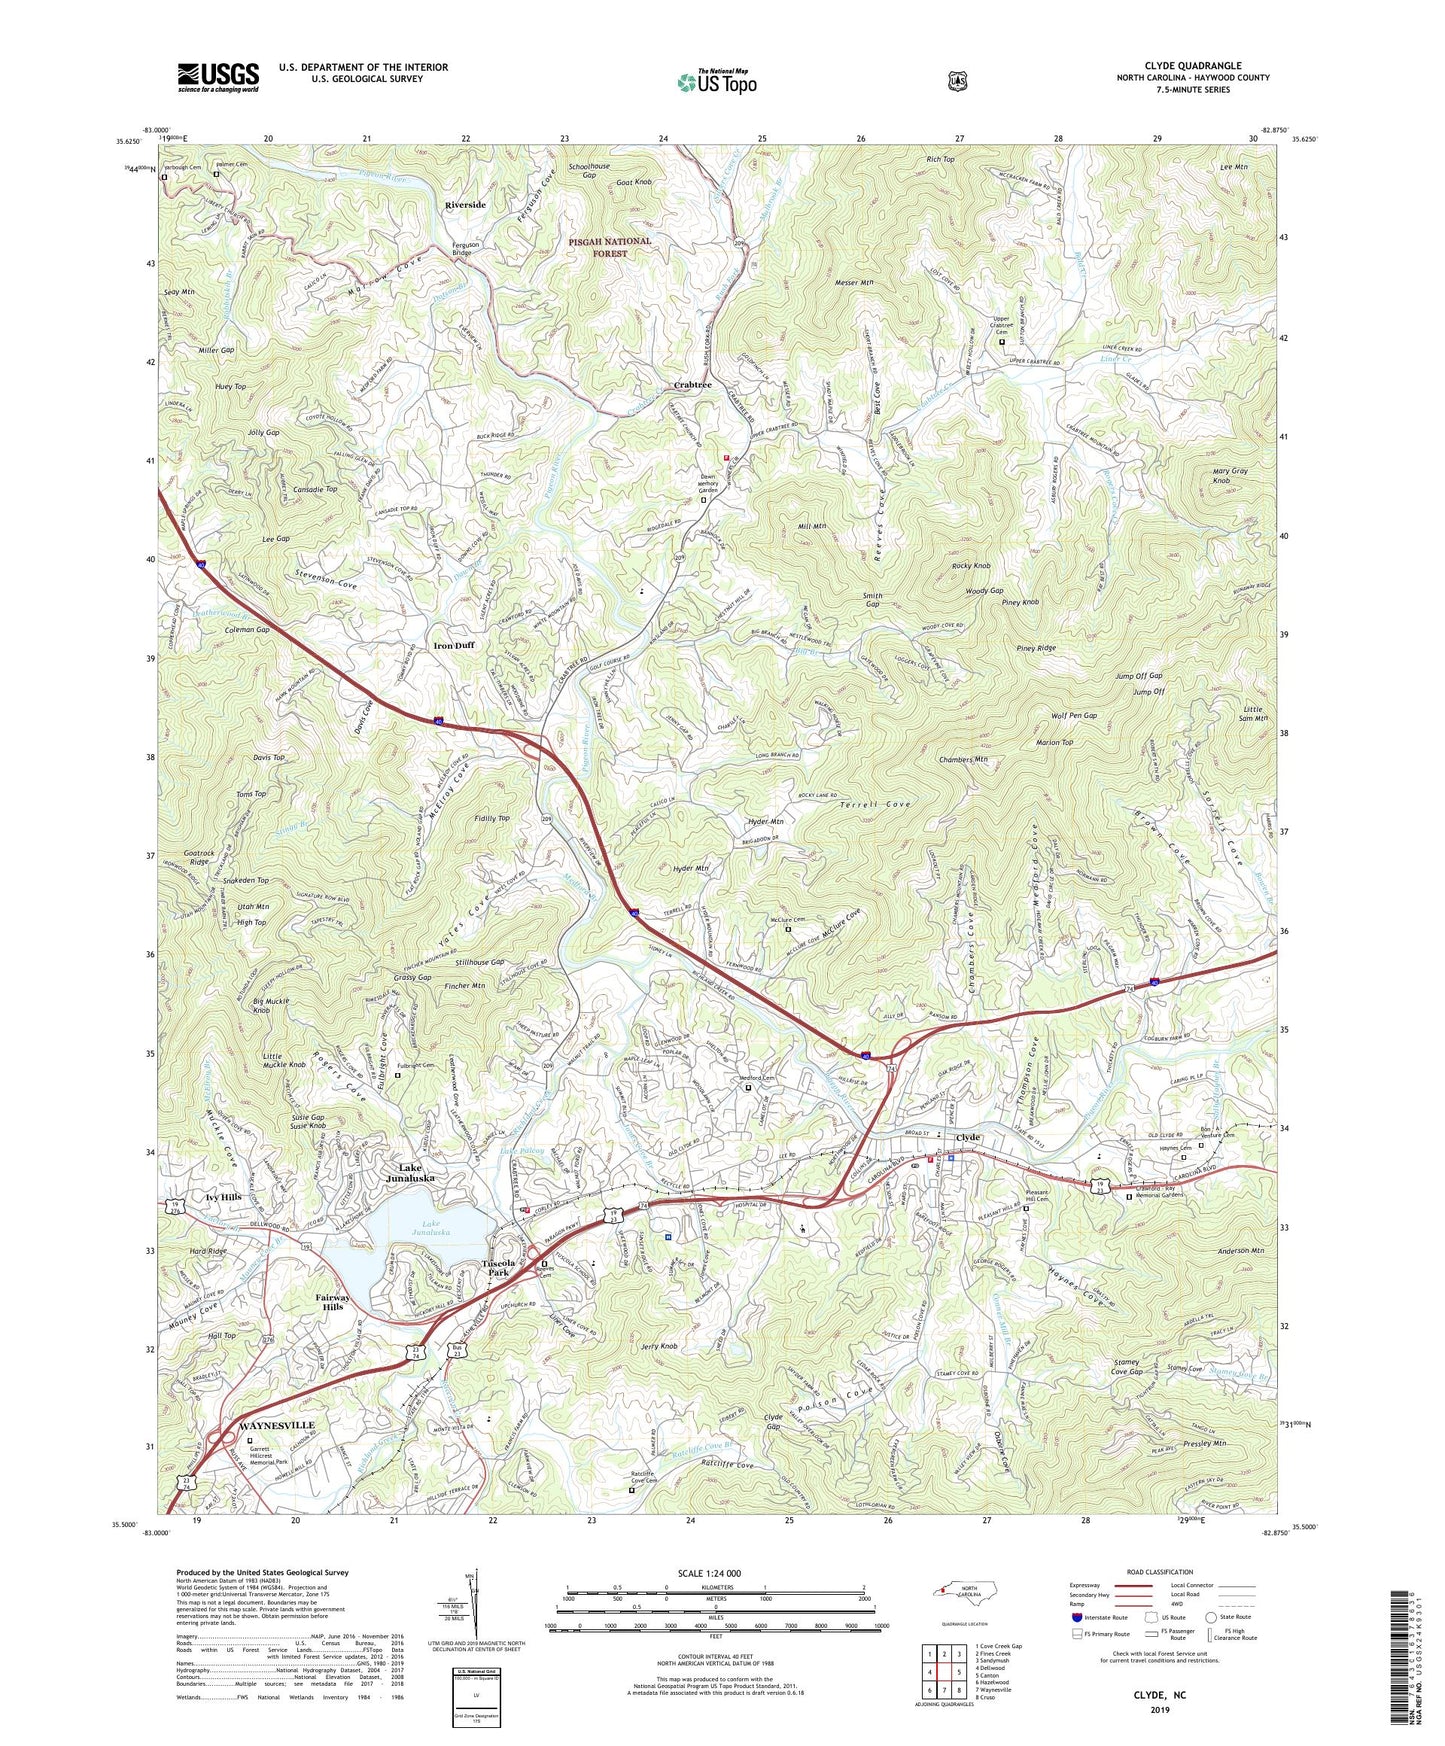 Clyde North Carolina US Topo Map Image